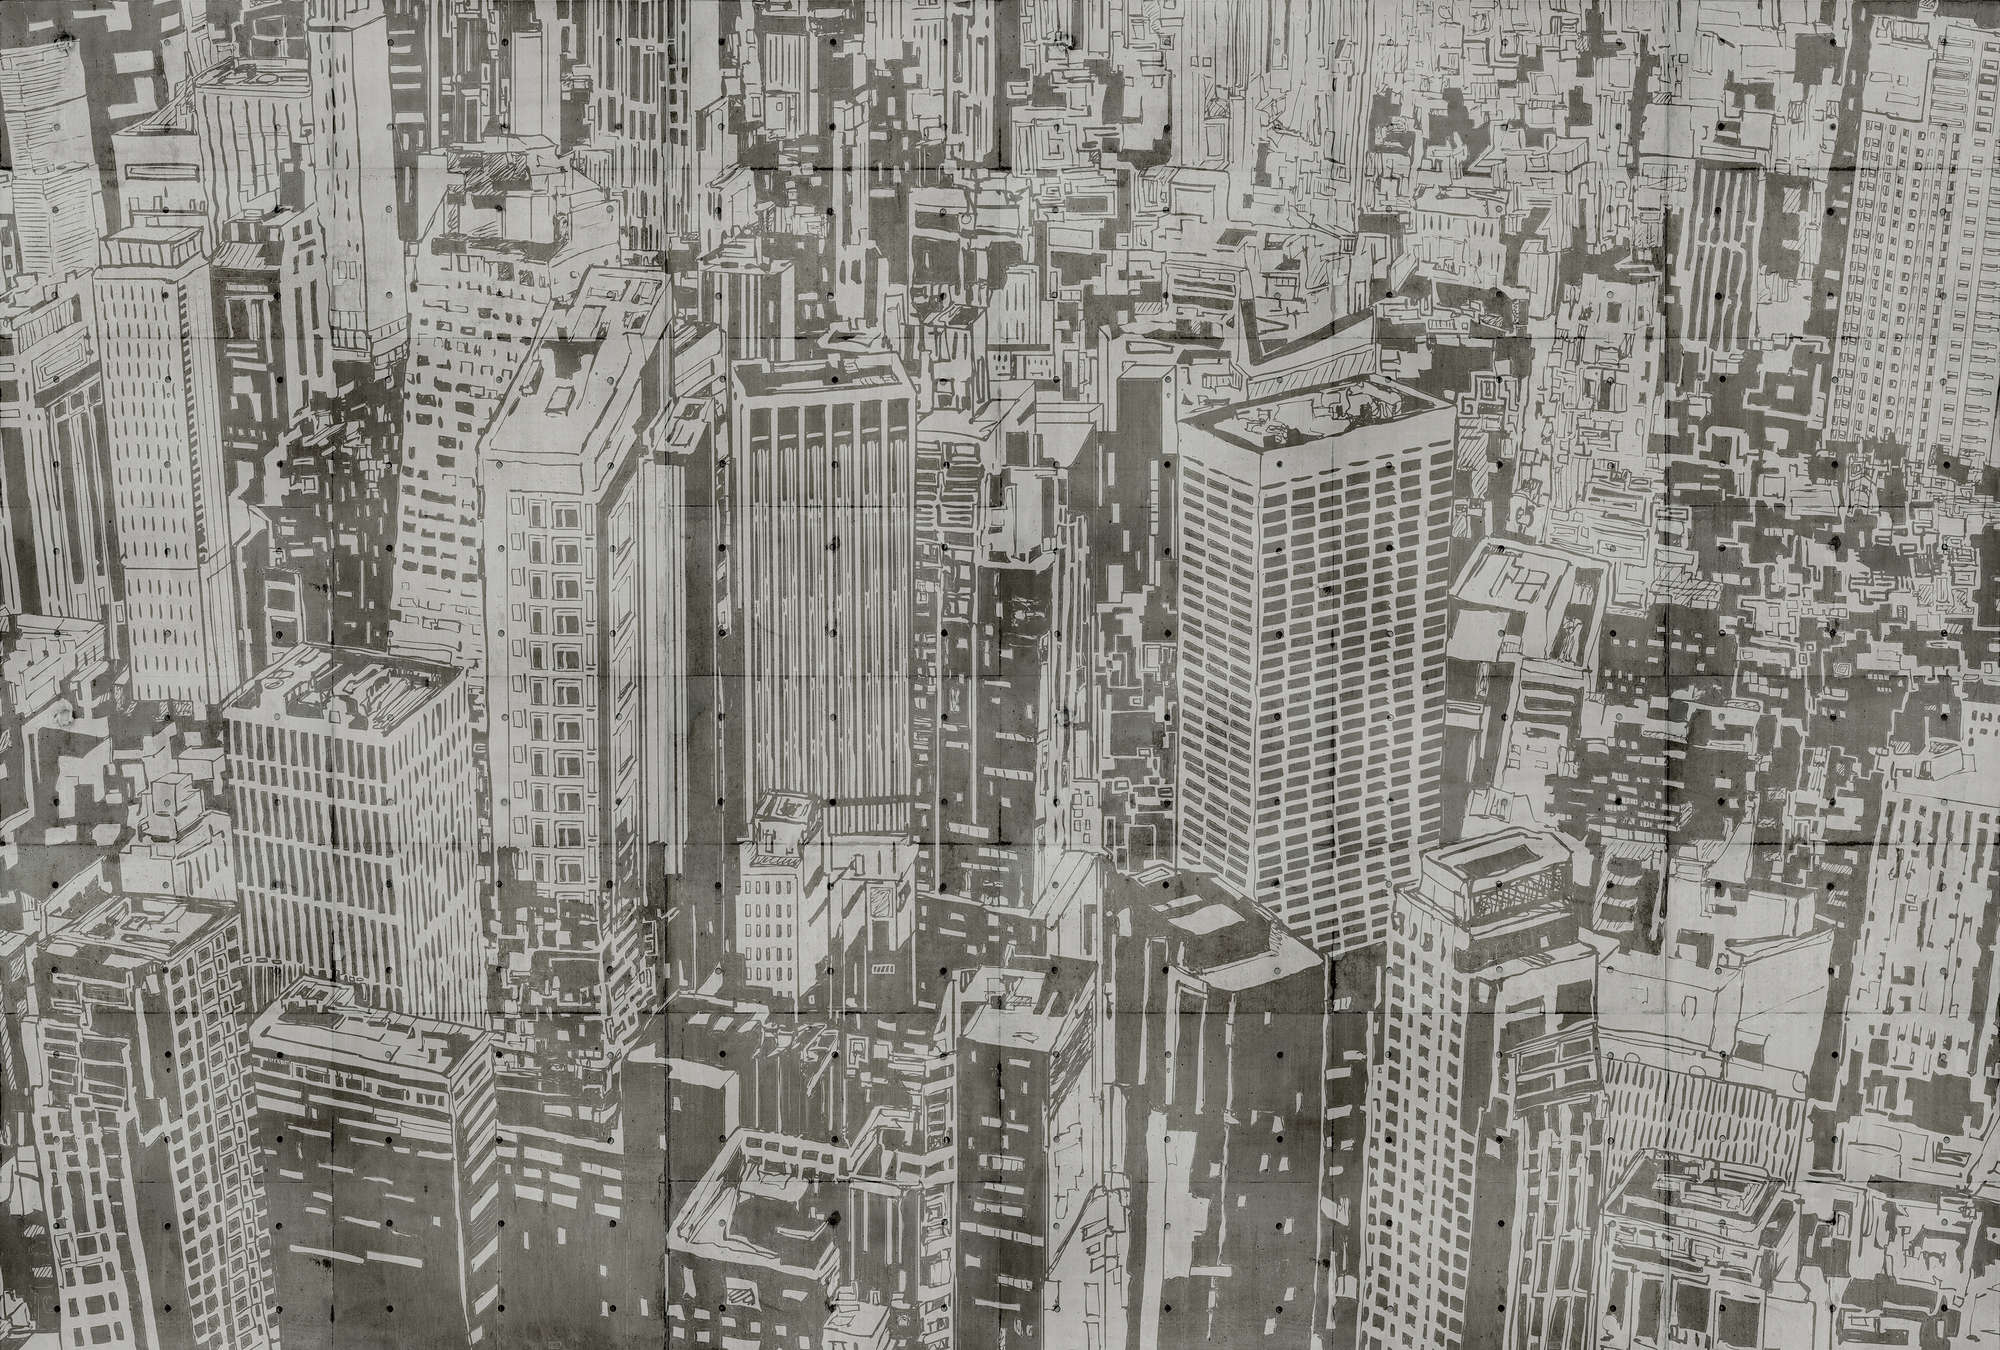             Downtown 2 - Fototapete in Beton Struktur im New York Look – Beige, Braun | Struktur Vlies
        